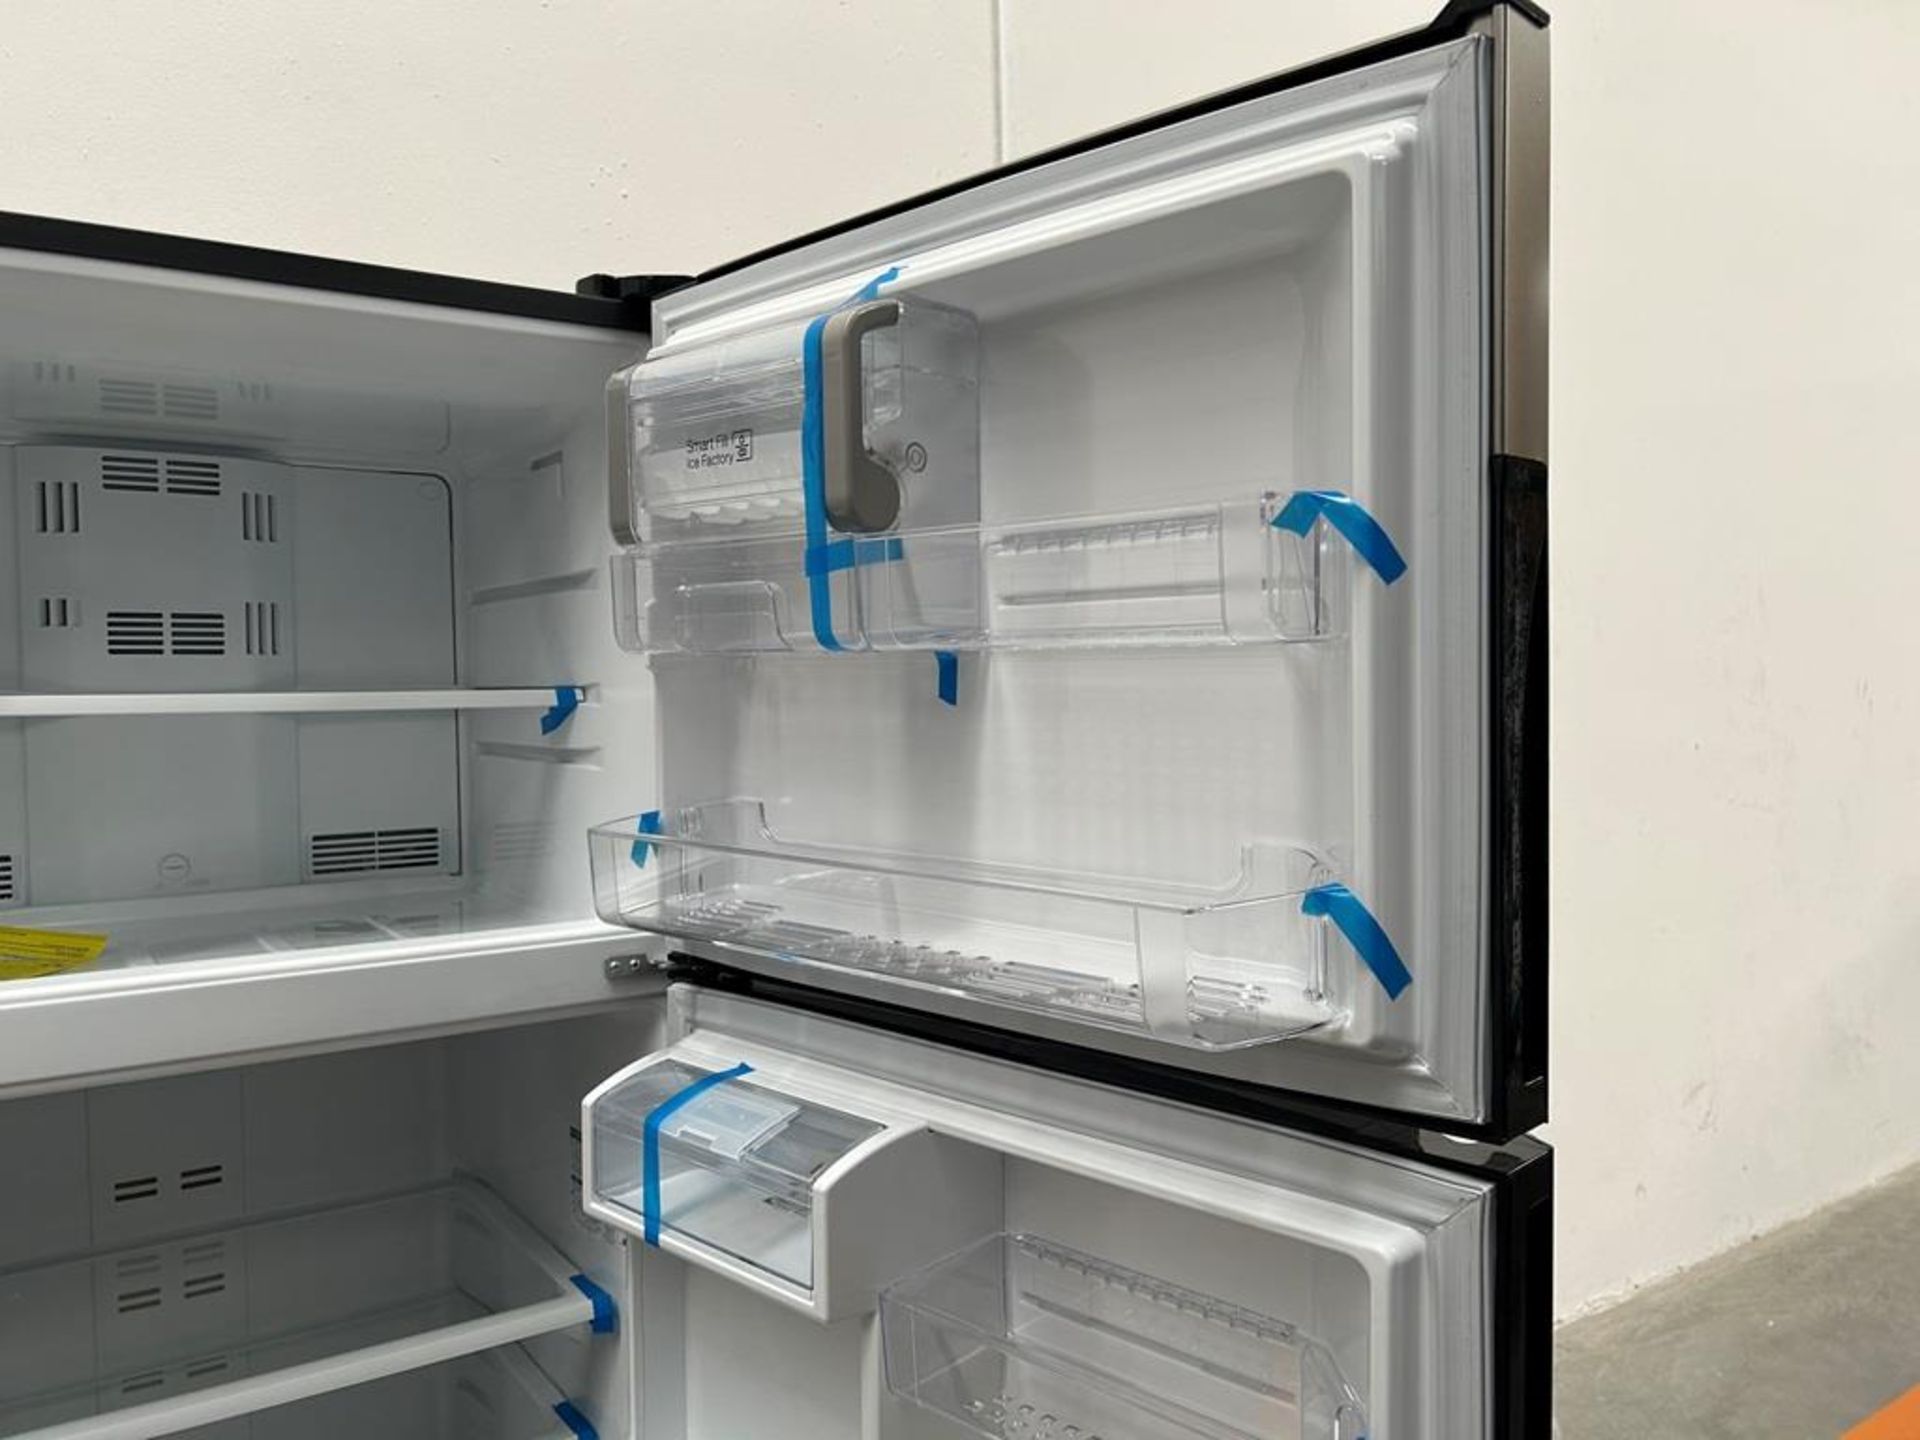 (NUEVO) Refrigerador con dispensador de agua Marca MABE, Modelo RMS510IBMRXA, Serie 04327, Color GR - Image 8 of 11